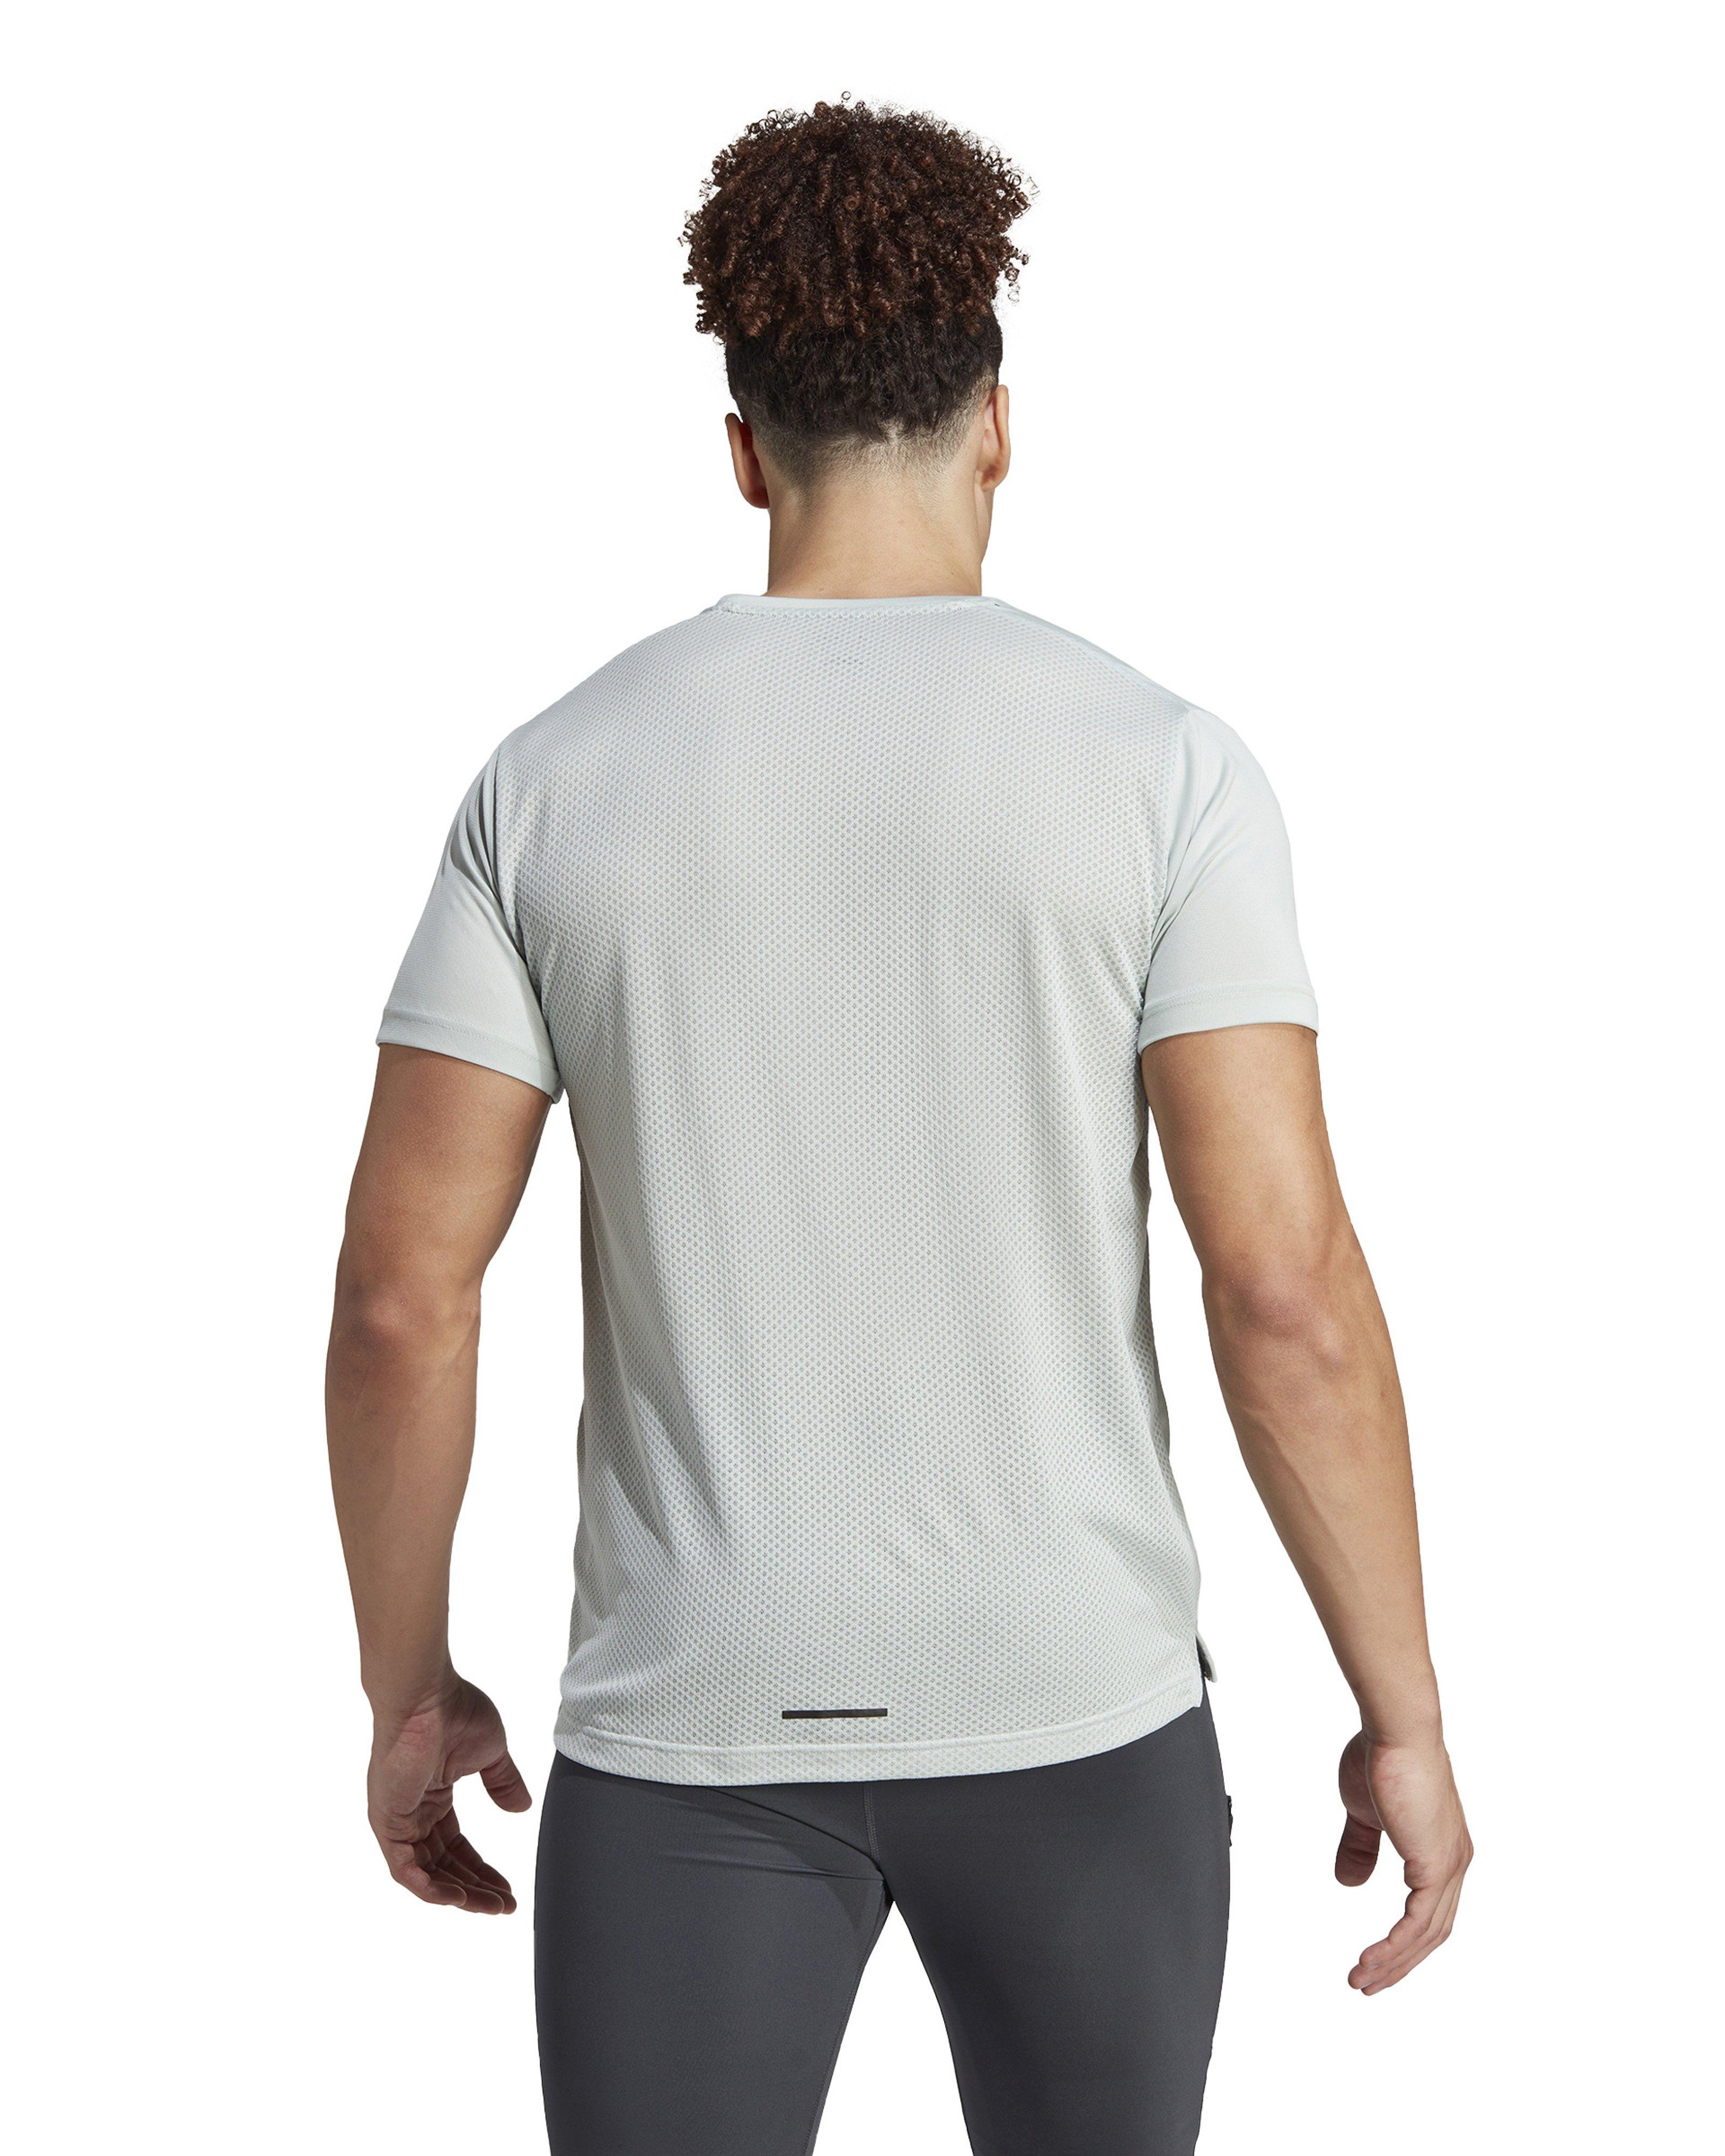 Adidas Men’s Terrex Agravic Trail Running T-shirt -  Sage